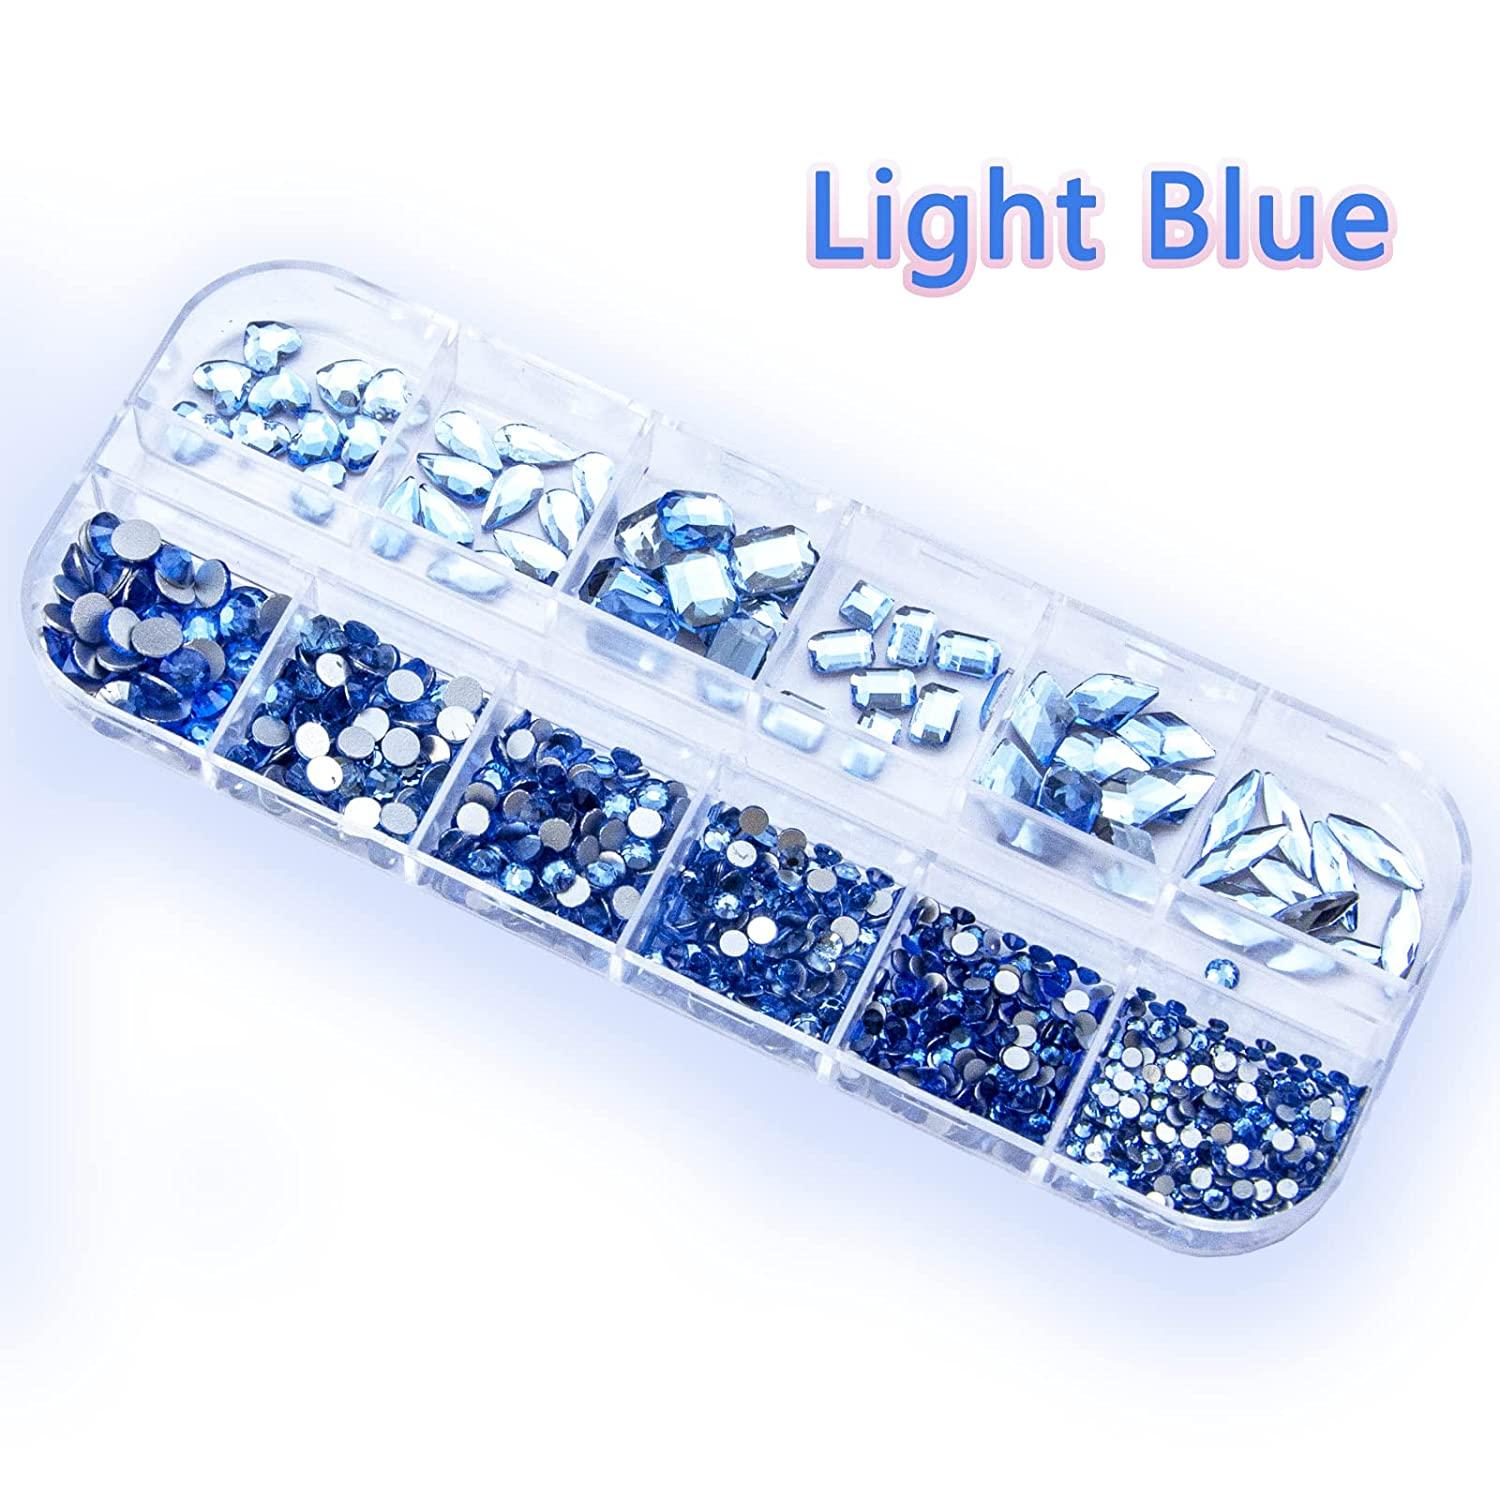  Nail Art Lake Blue Crystals Rhinestones Set - 4880pcs